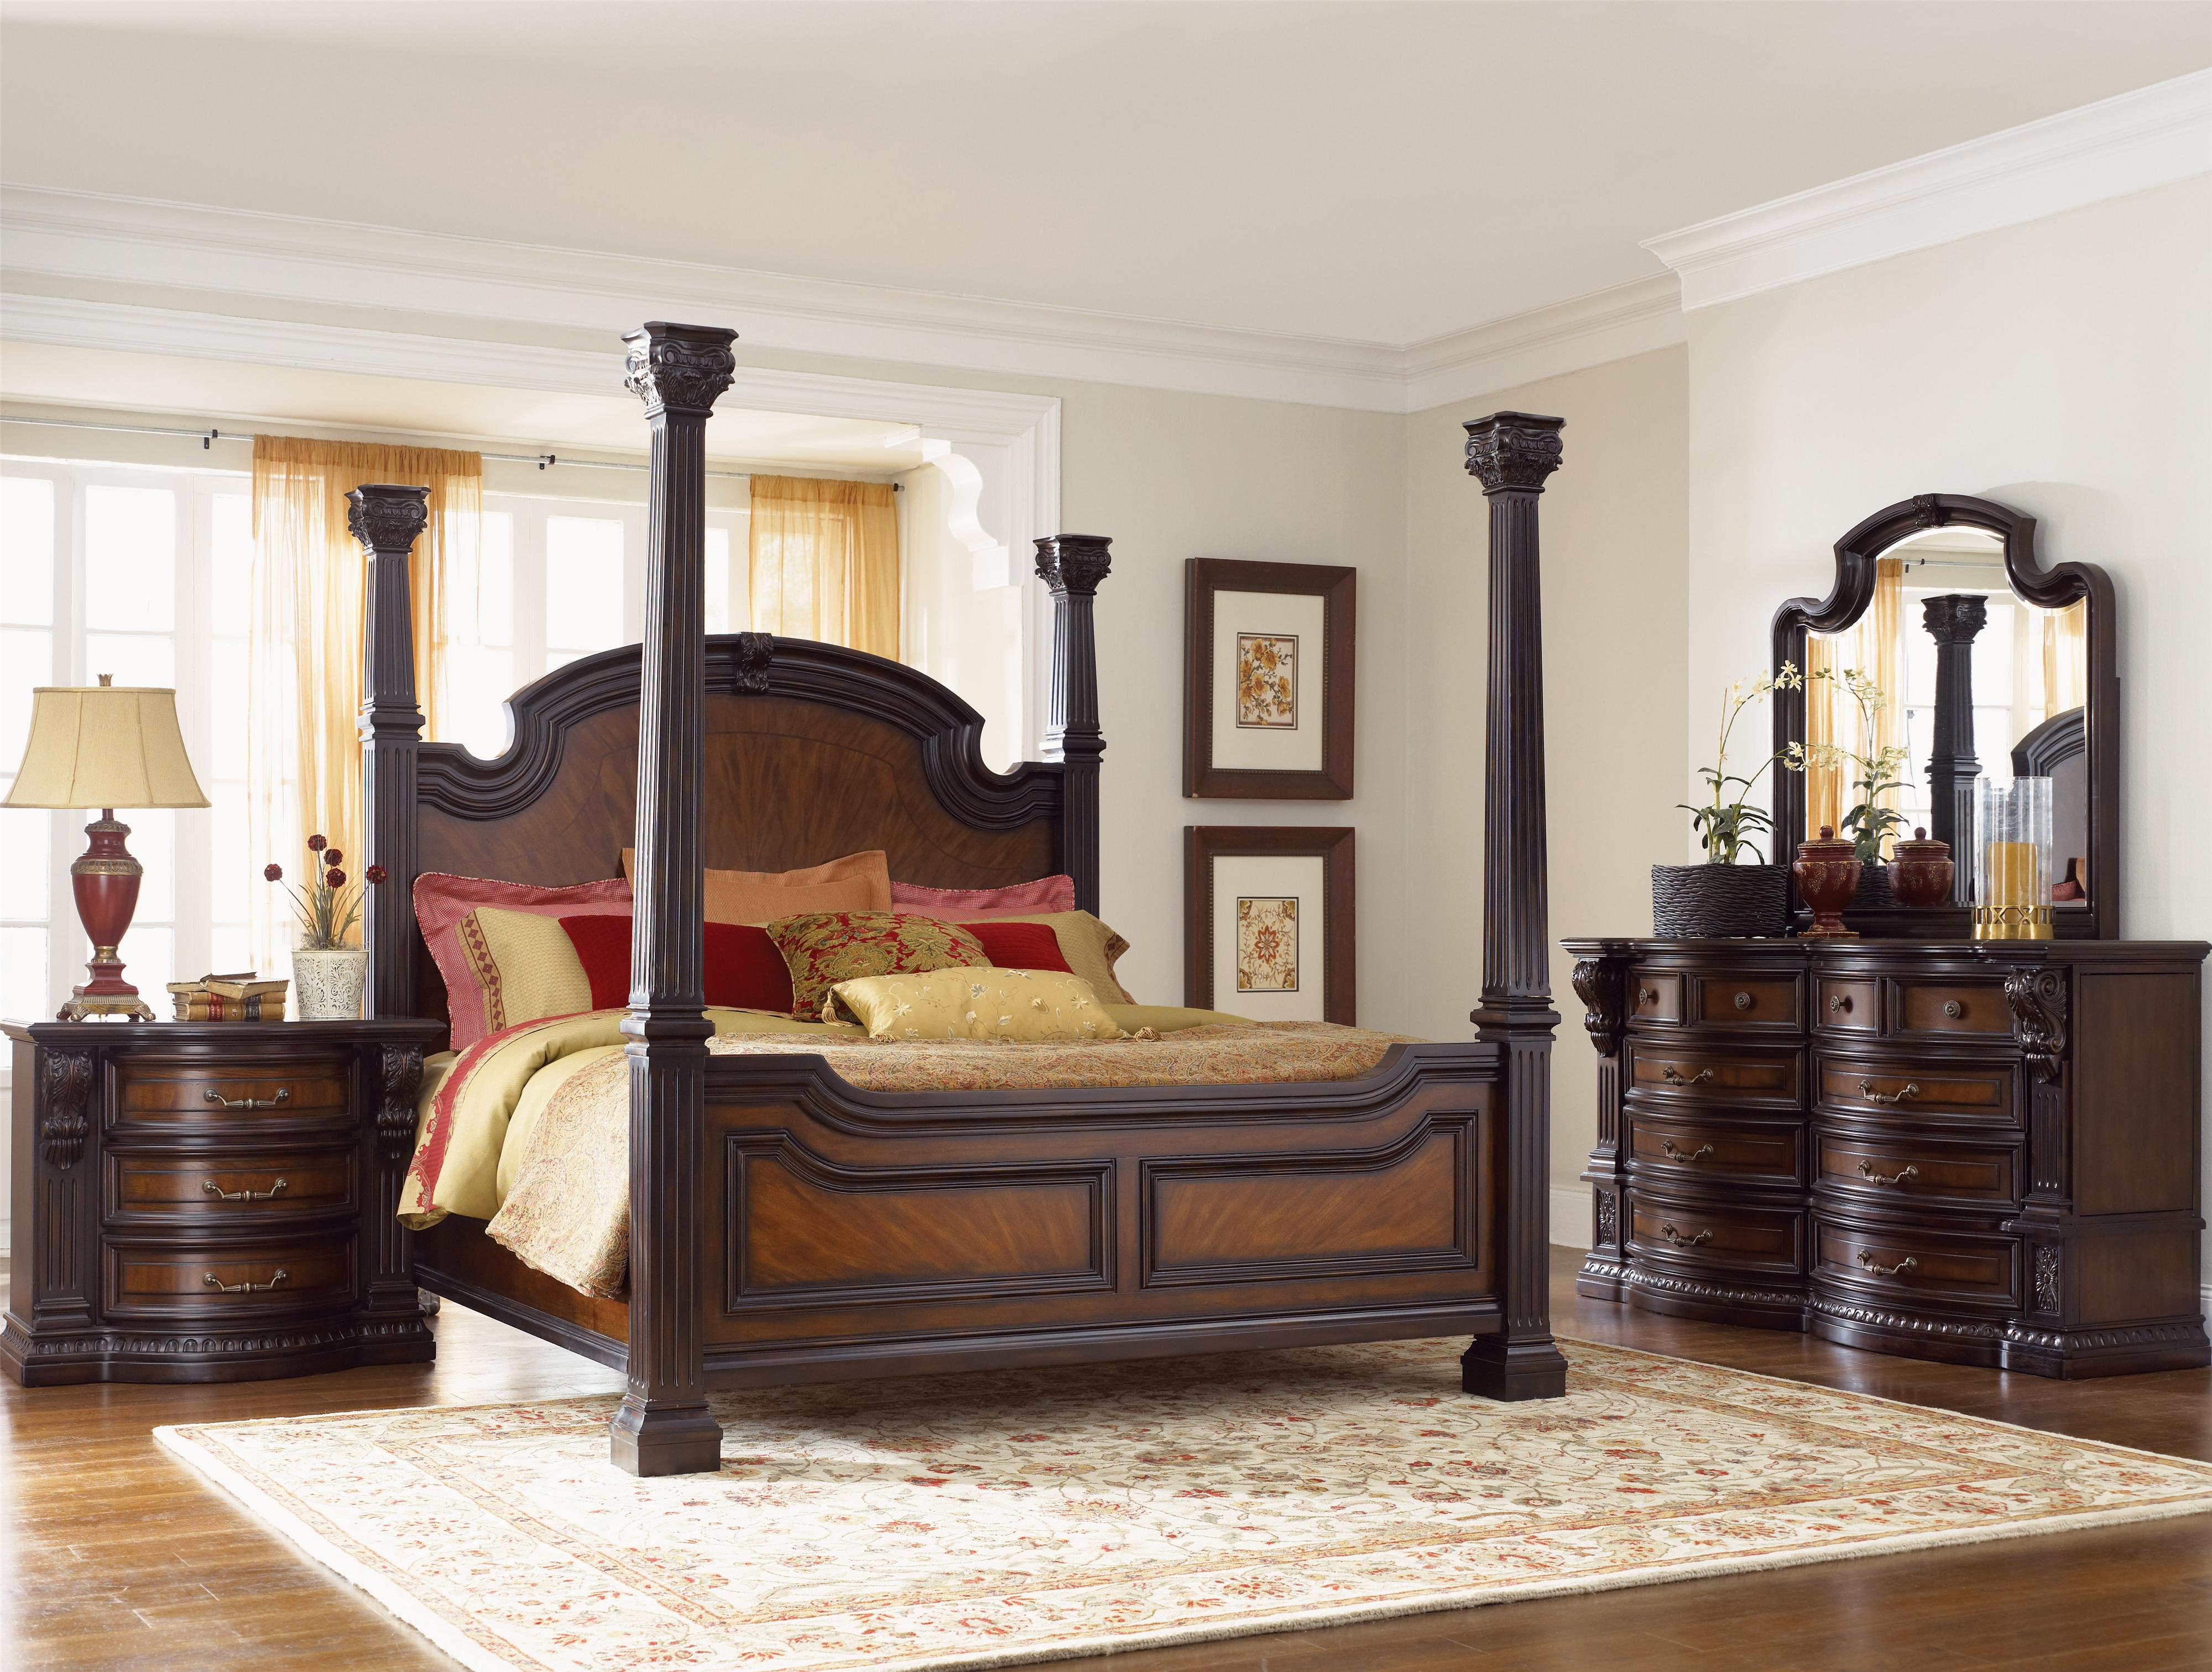 bedroom furniture sets king size bed photo - 7